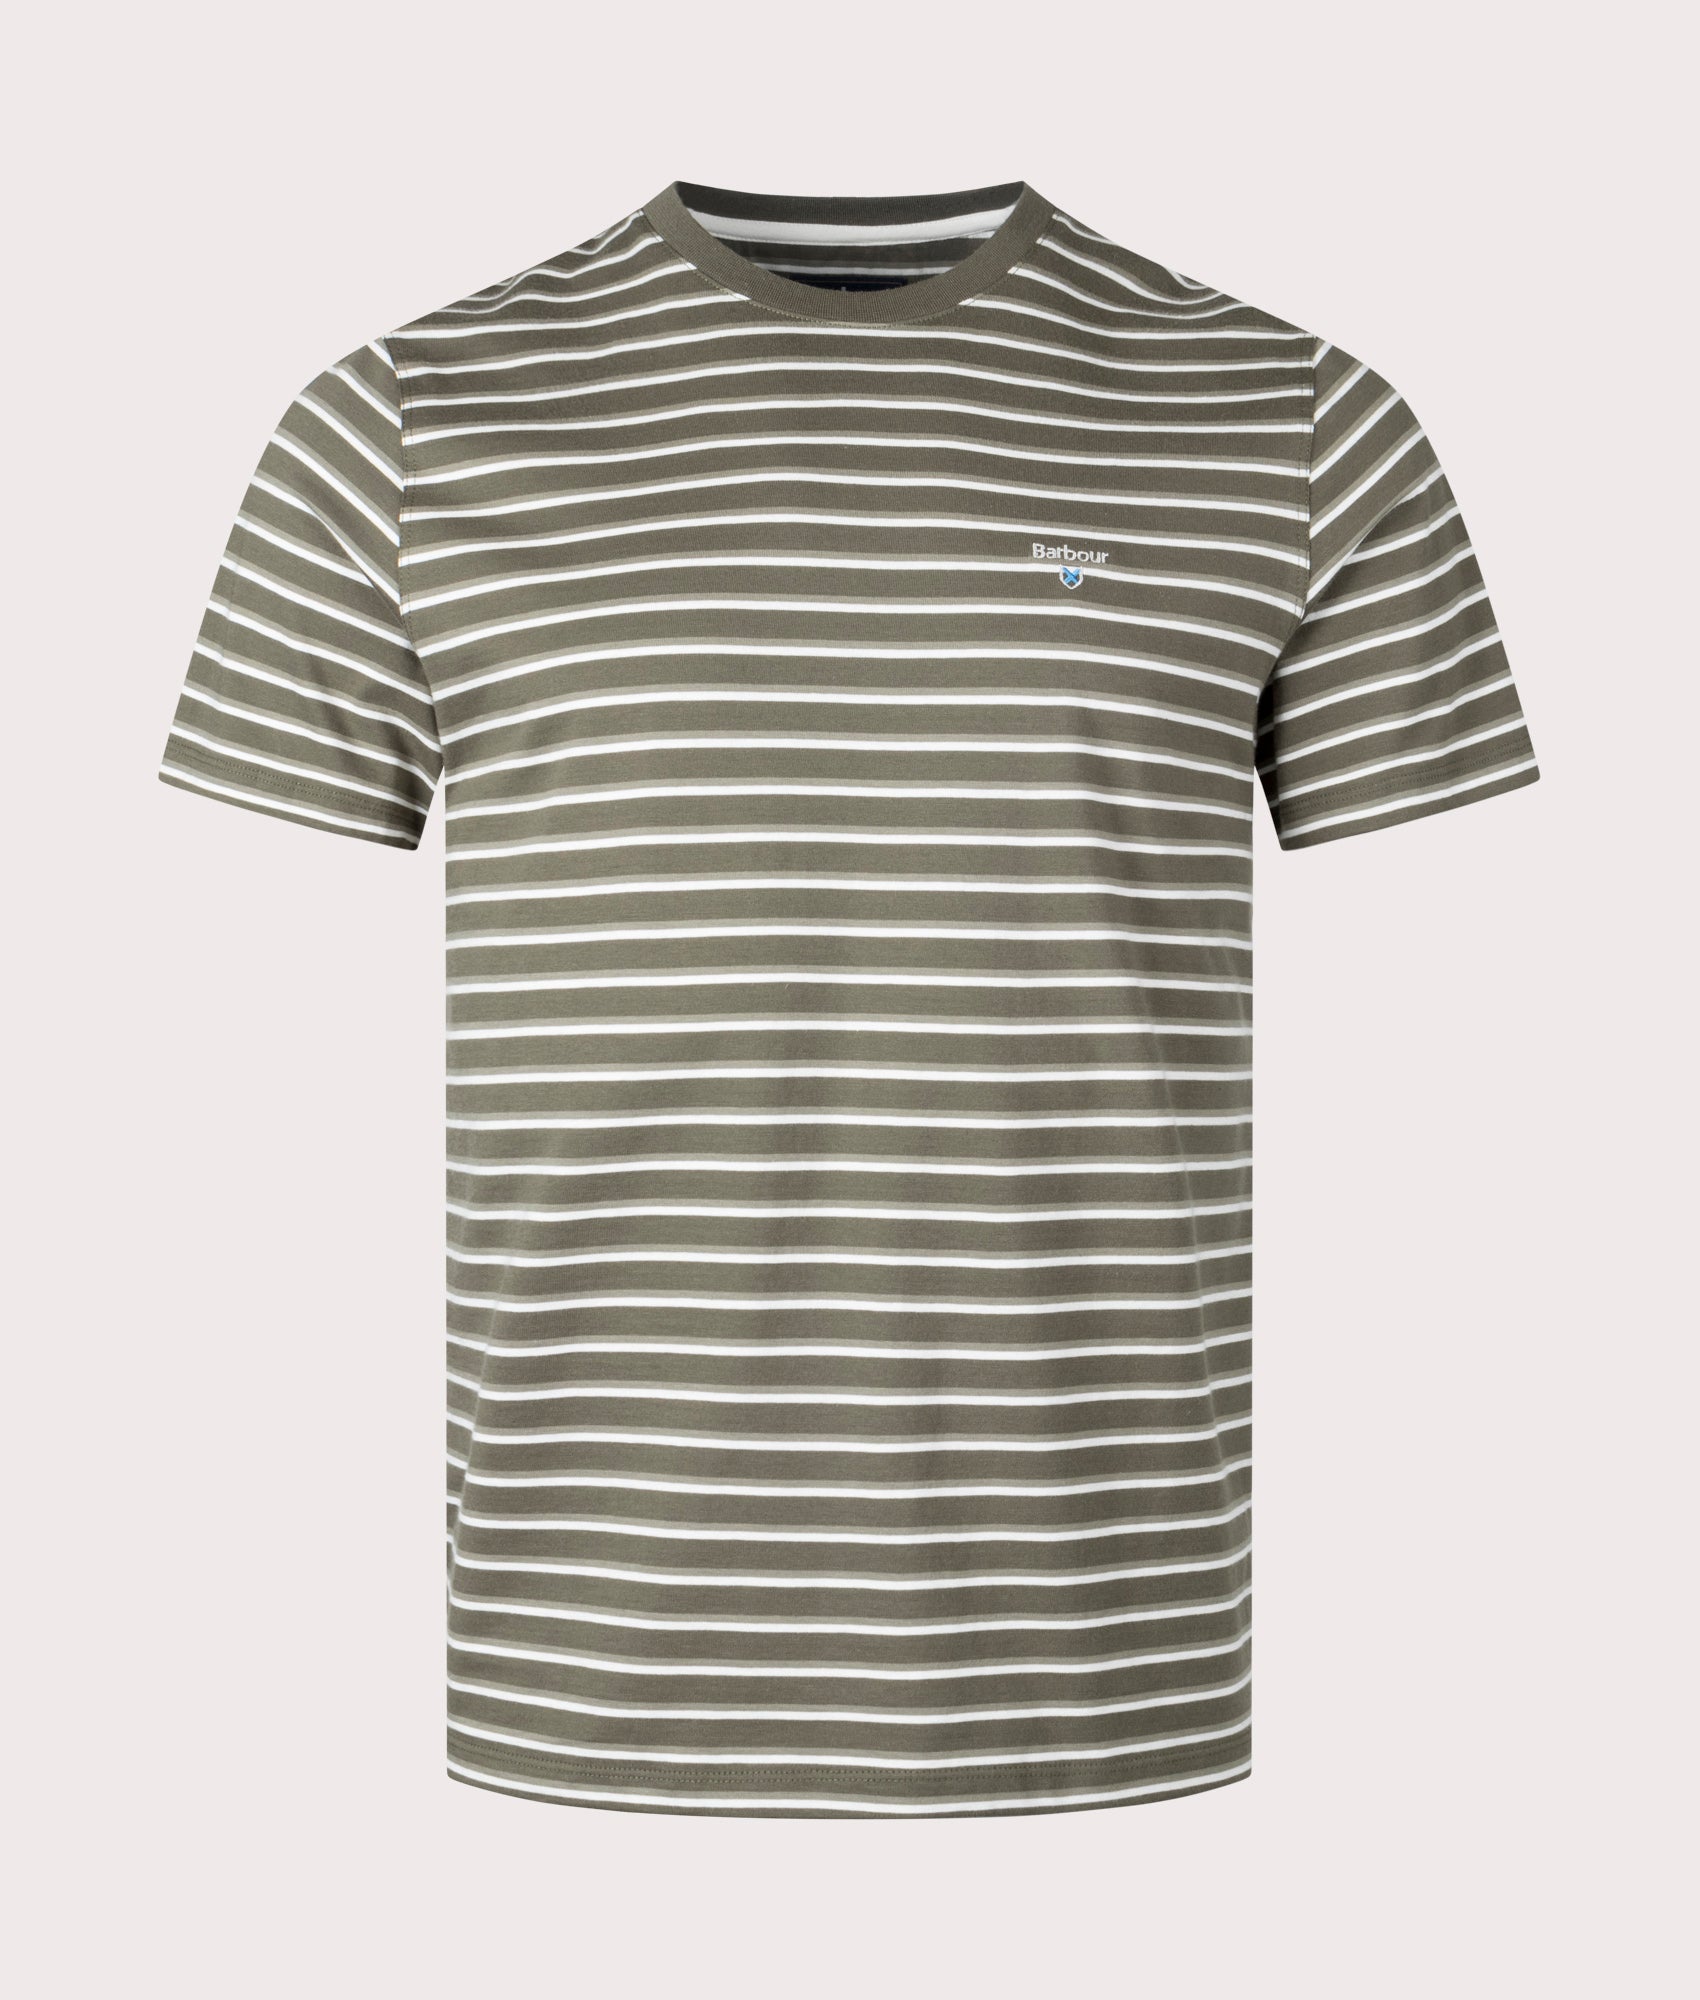 Barbour Lifestyle Mens Ponte Stripe T-Shirt - Colour: SG15 Pale Sage - Size: Medium